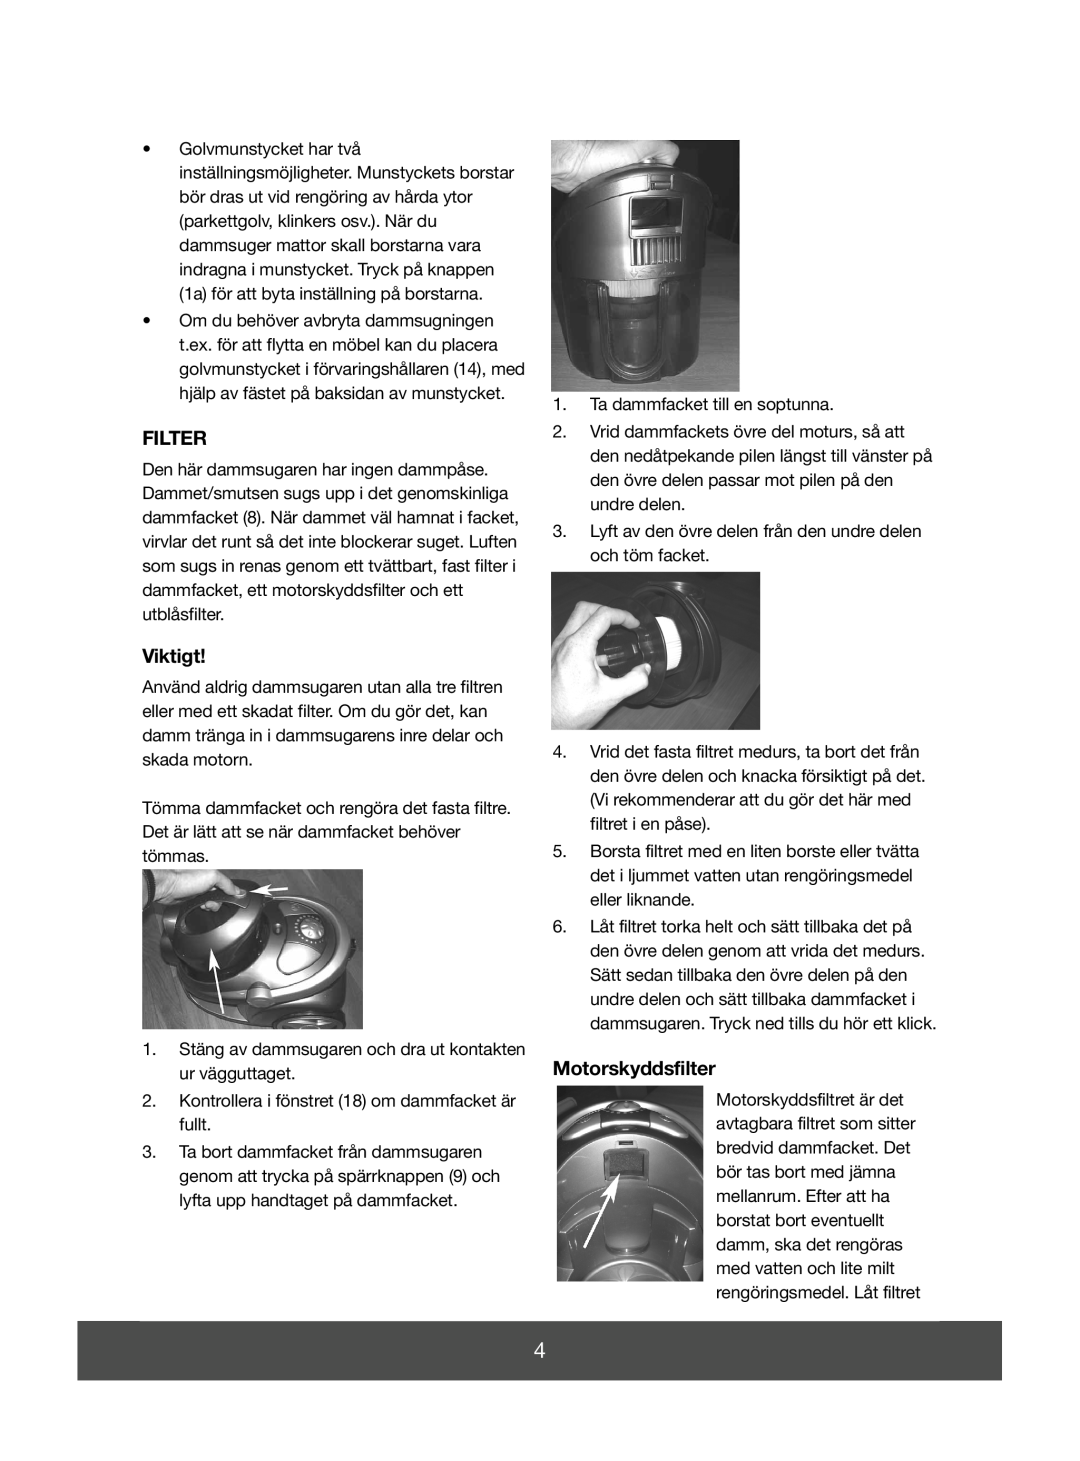 Melissa 640-139 manual Filter, Viktigt, Motorskyddsfilter 